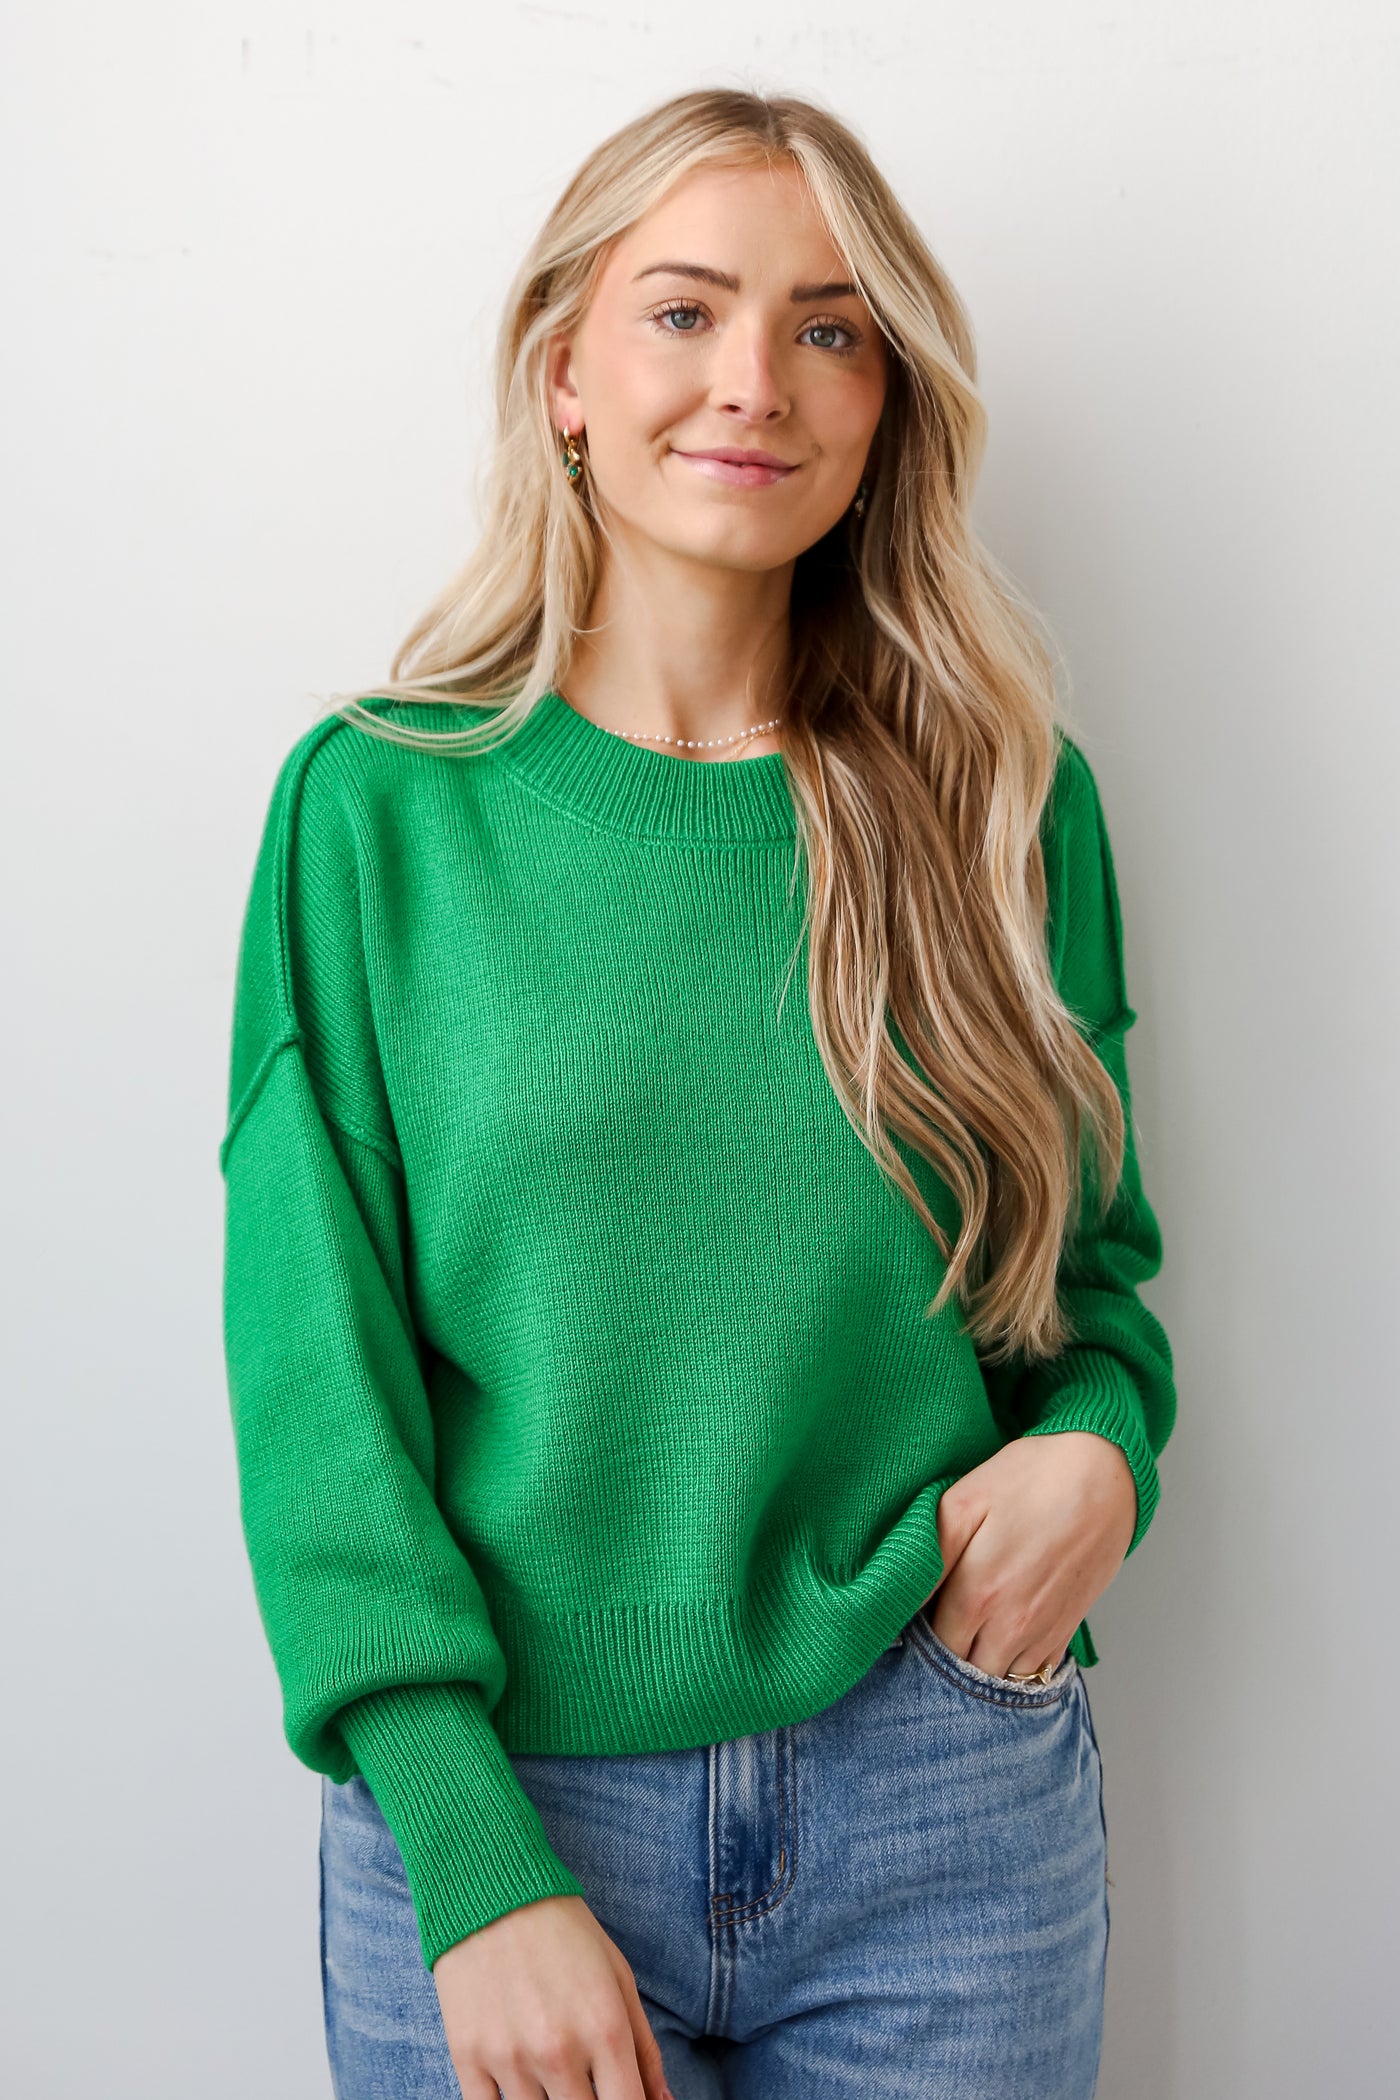 Kelly Green Sweater for women